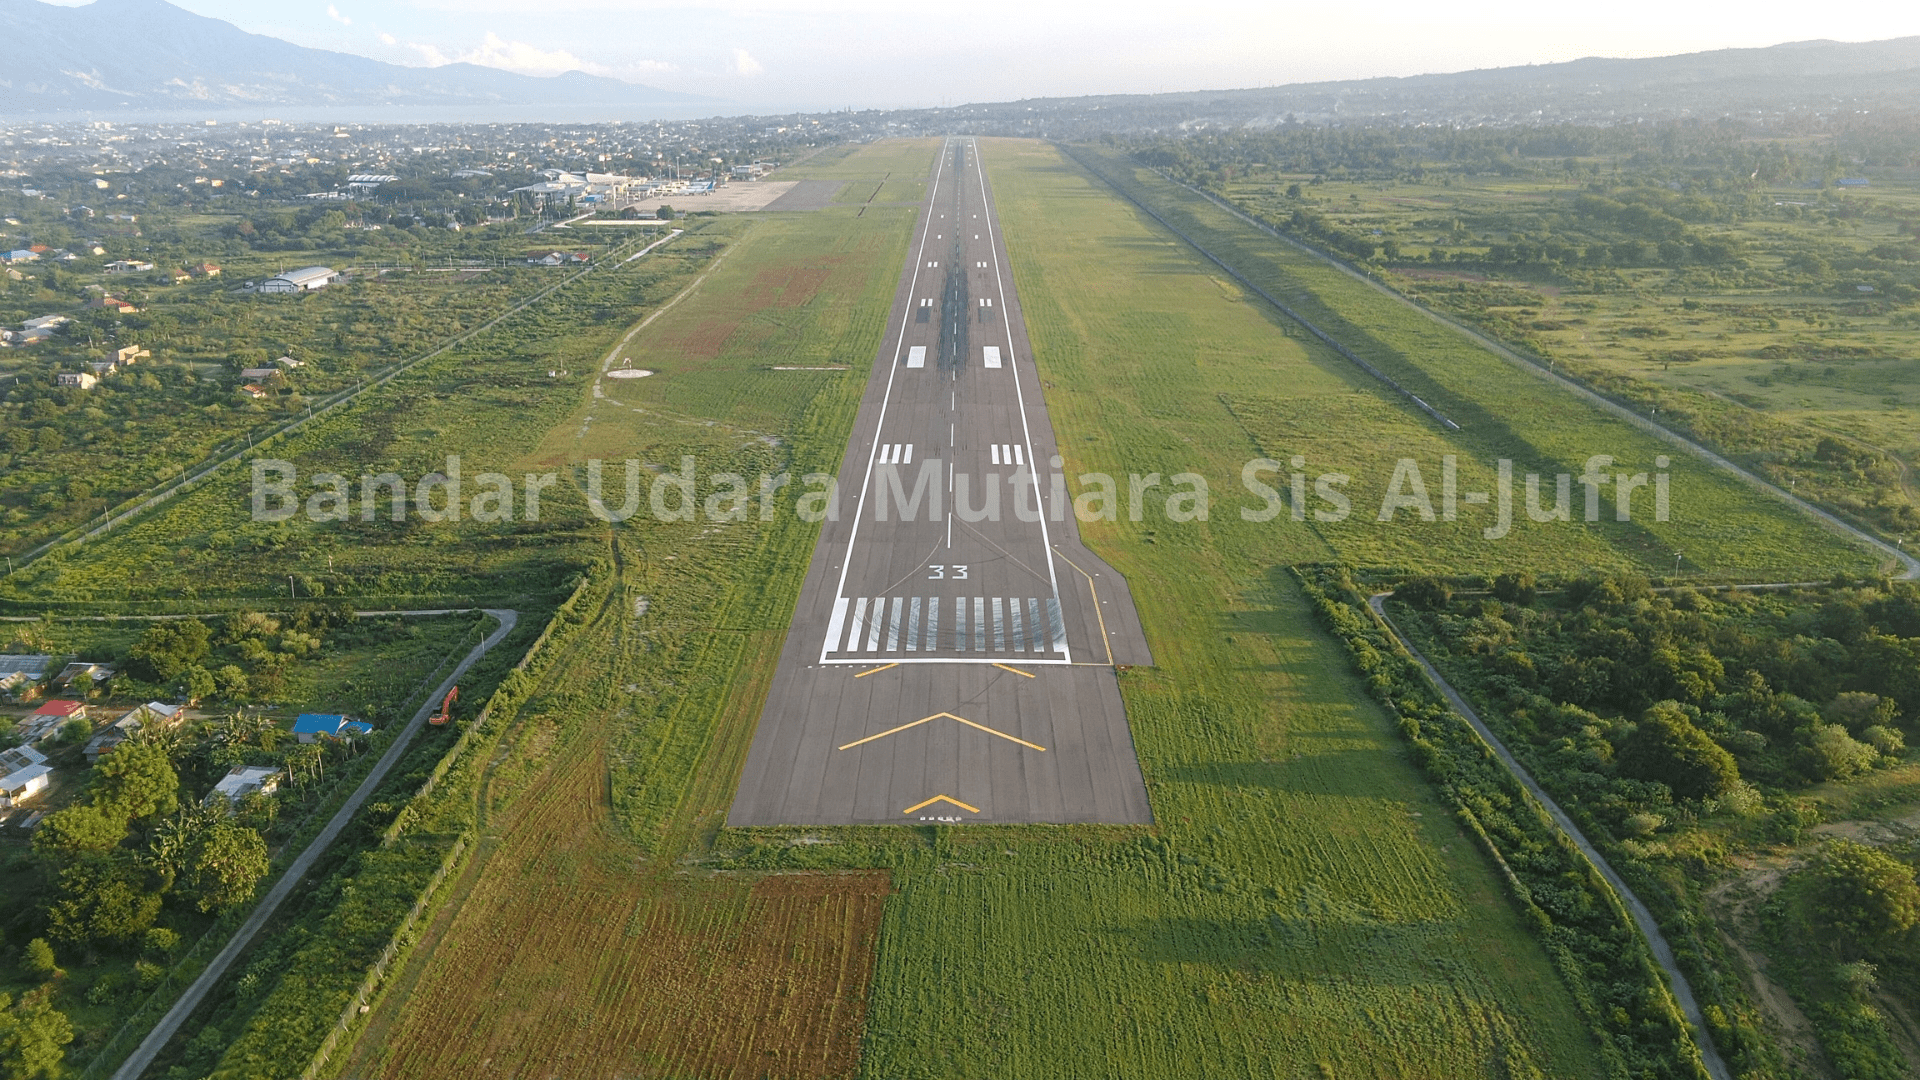 Foto Bandara Runway 33